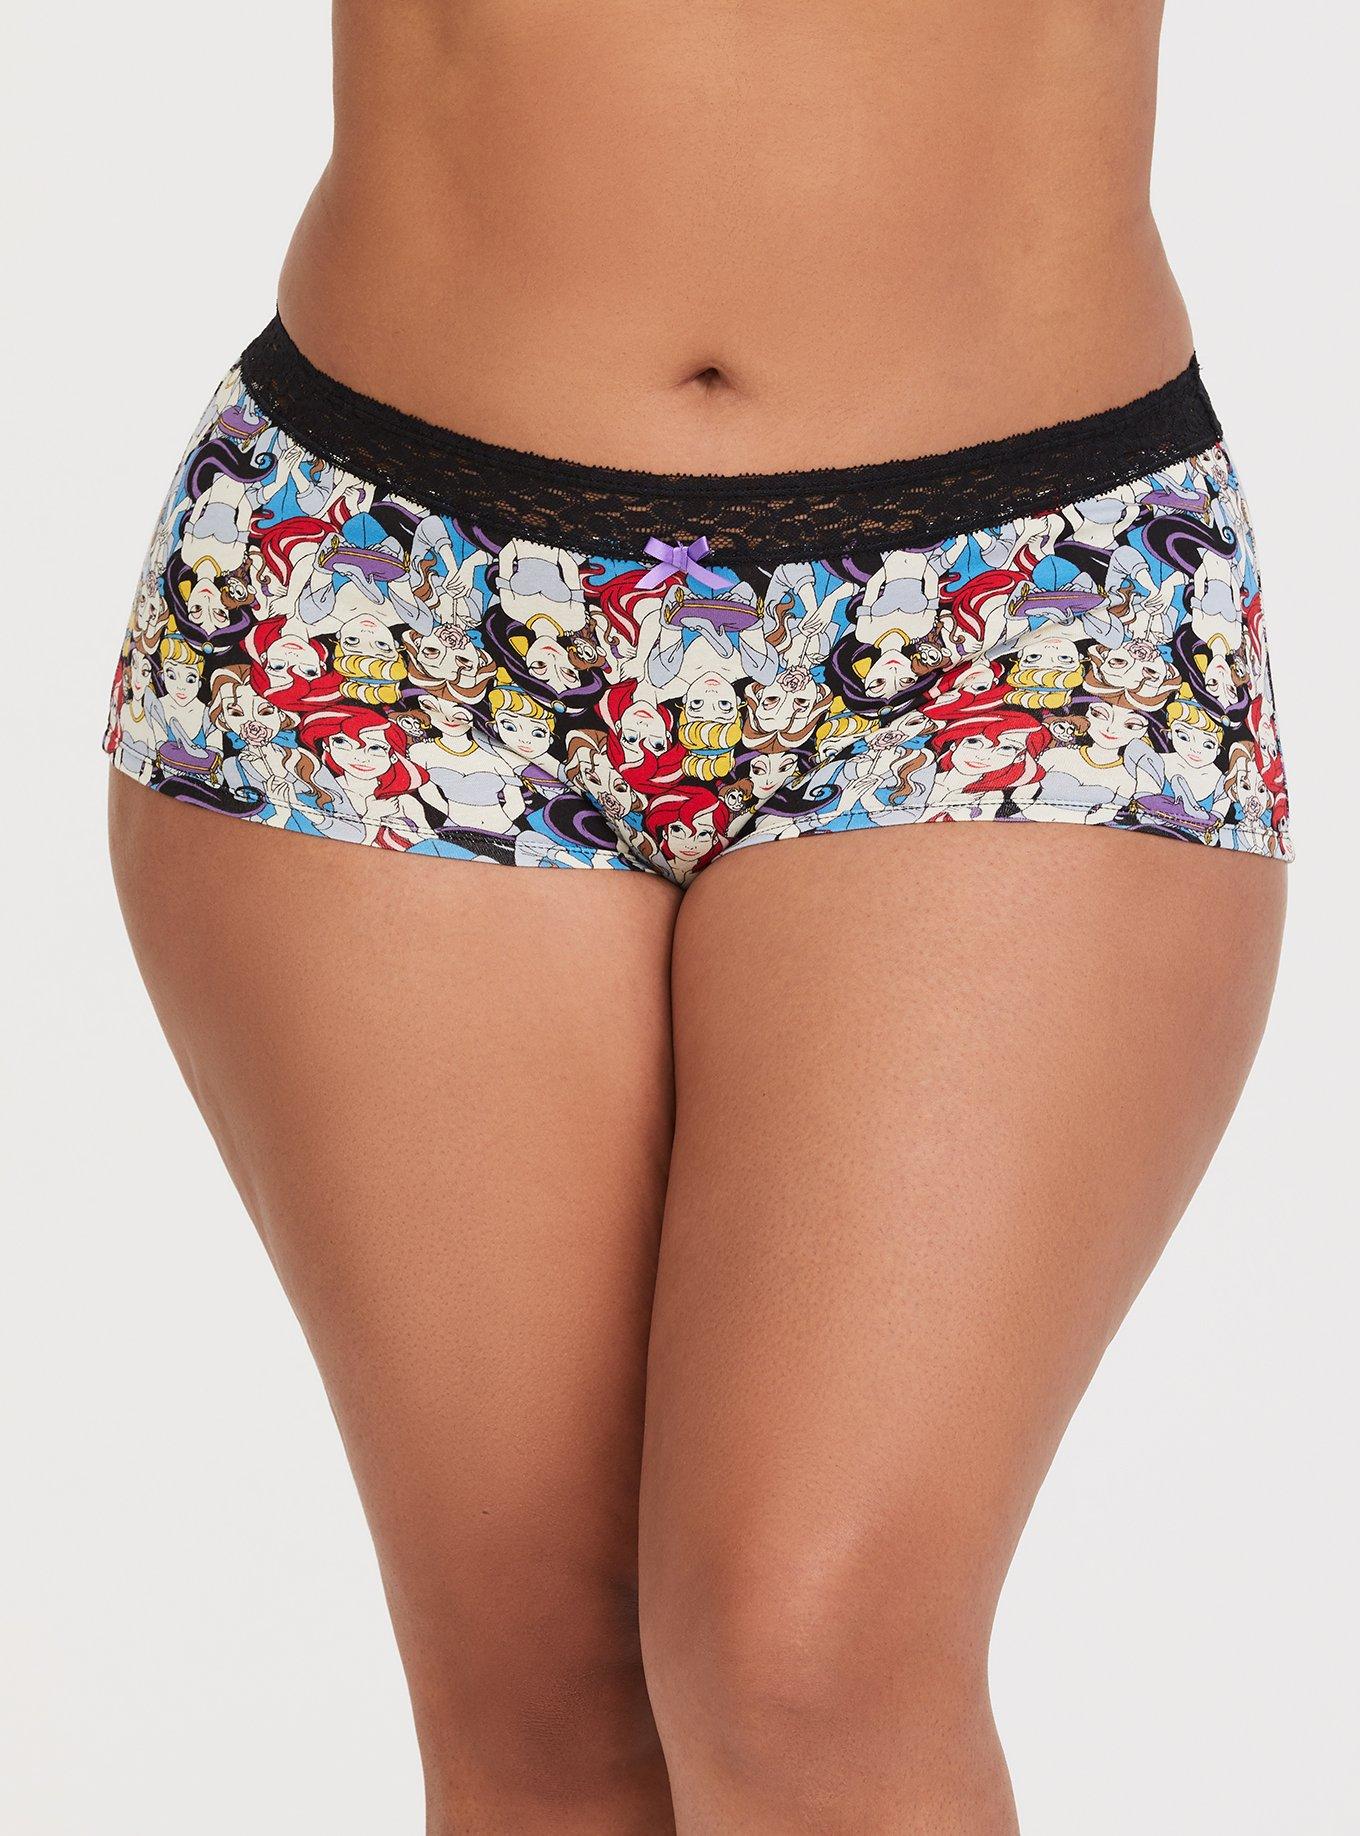 Torrid Cheeky Panties Underwear Disney Marvel Deadpool Tacos Plus Size 2 18  / 20